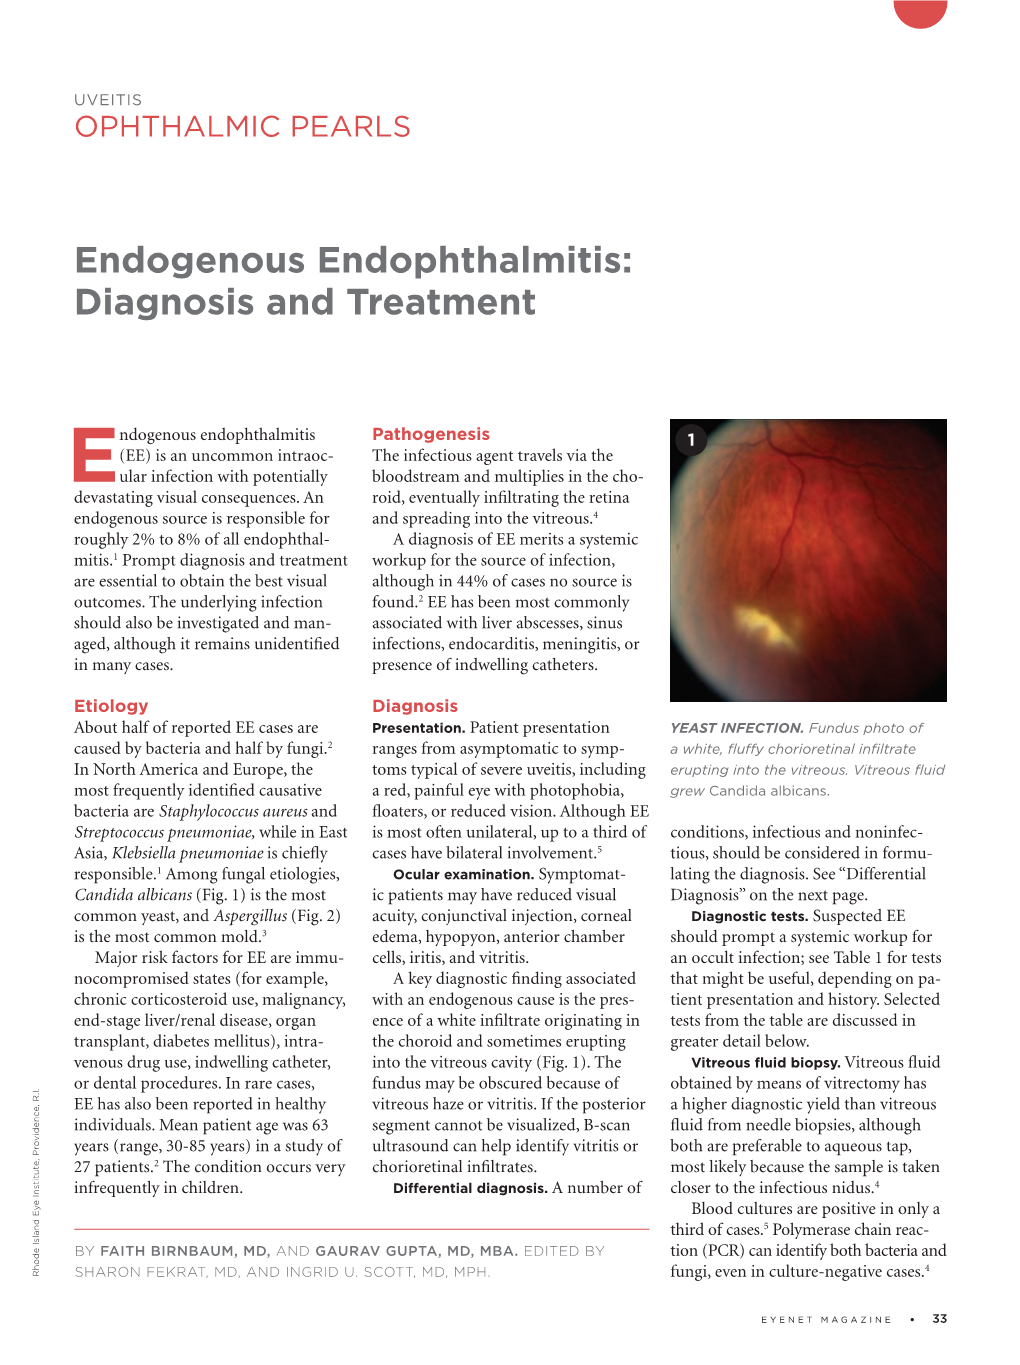 Endogenous Endophthalmitis: Diagnosis and Treatment